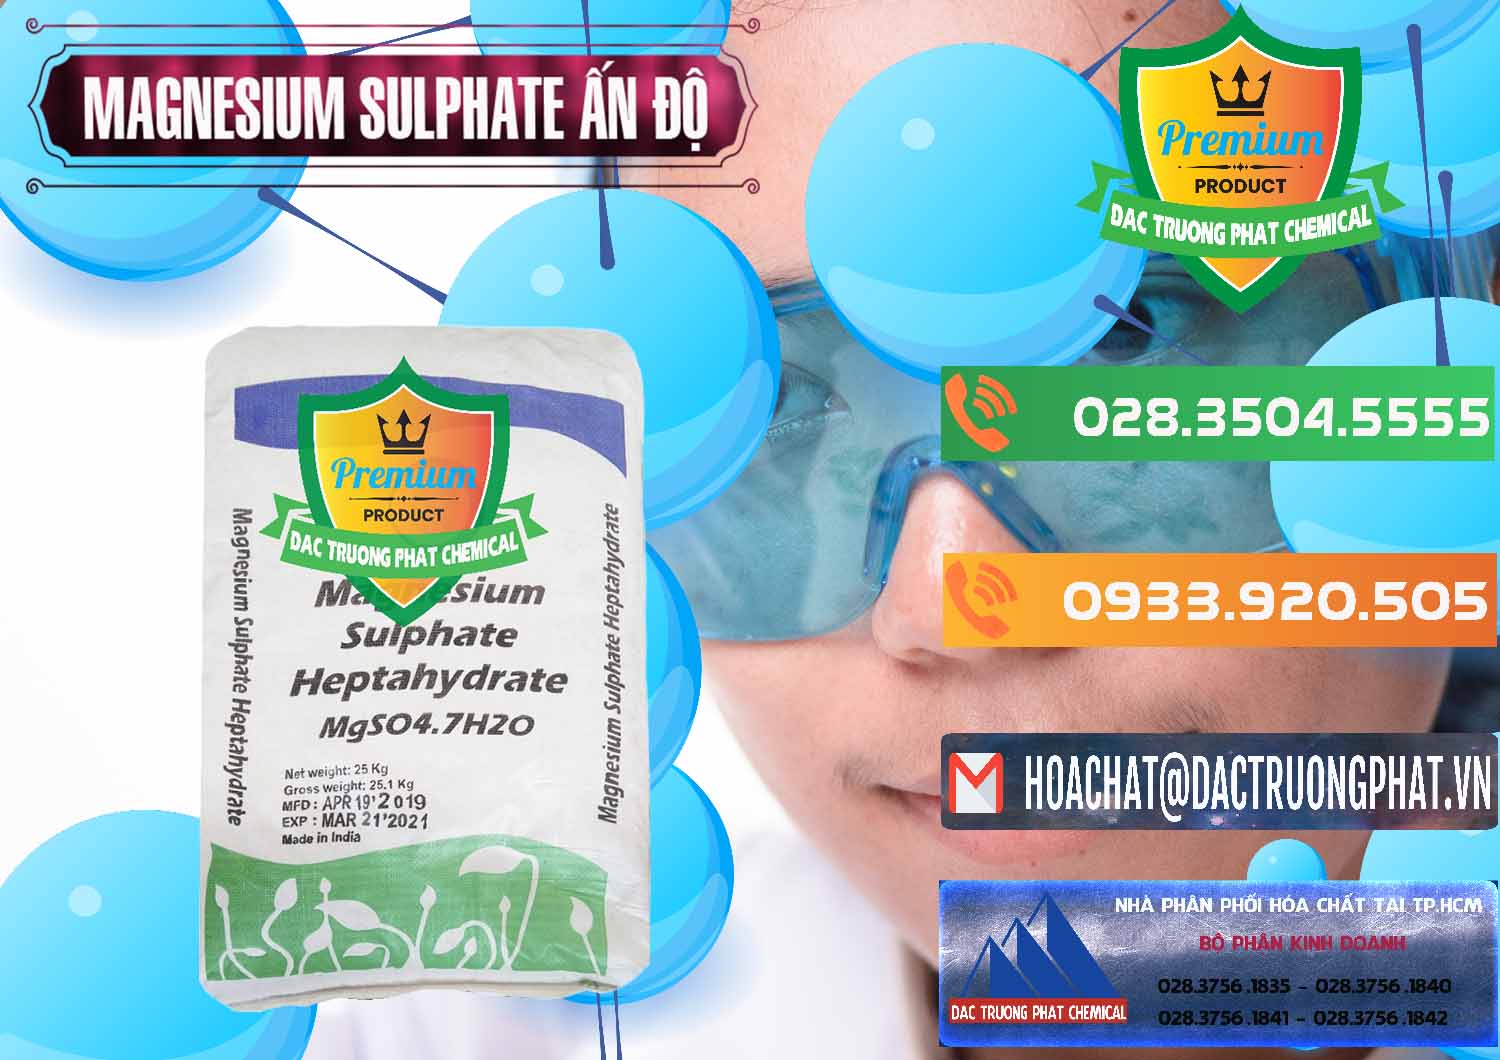 Công ty chuyên bán và cung ứng MGSO4.7H2O – Magnesium Sulphate Heptahydrate Ấn Độ India - 0362 - Cty phân phối & cung cấp hóa chất tại TP.HCM - hoachatxulynuoc.com.vn